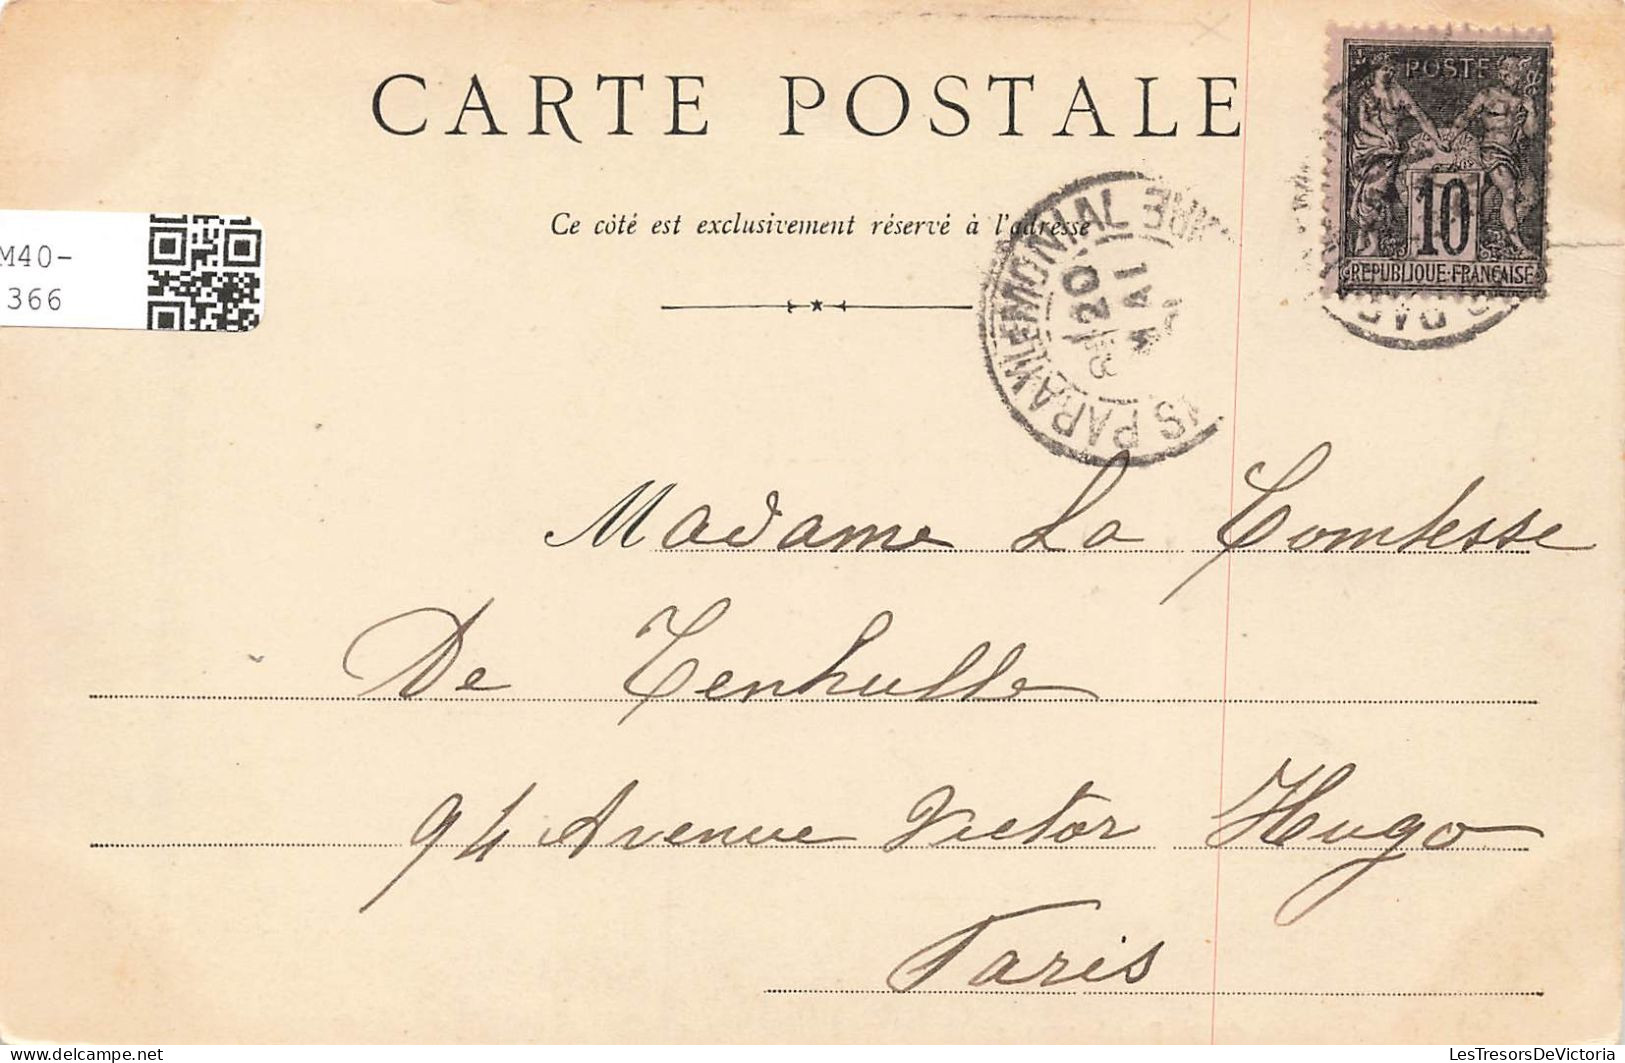 FRANCE - Paray Le Monial - Châsse De La Bienheureuse - Dos Non Divisé - Carte Postale Ancienne - Paray Le Monial